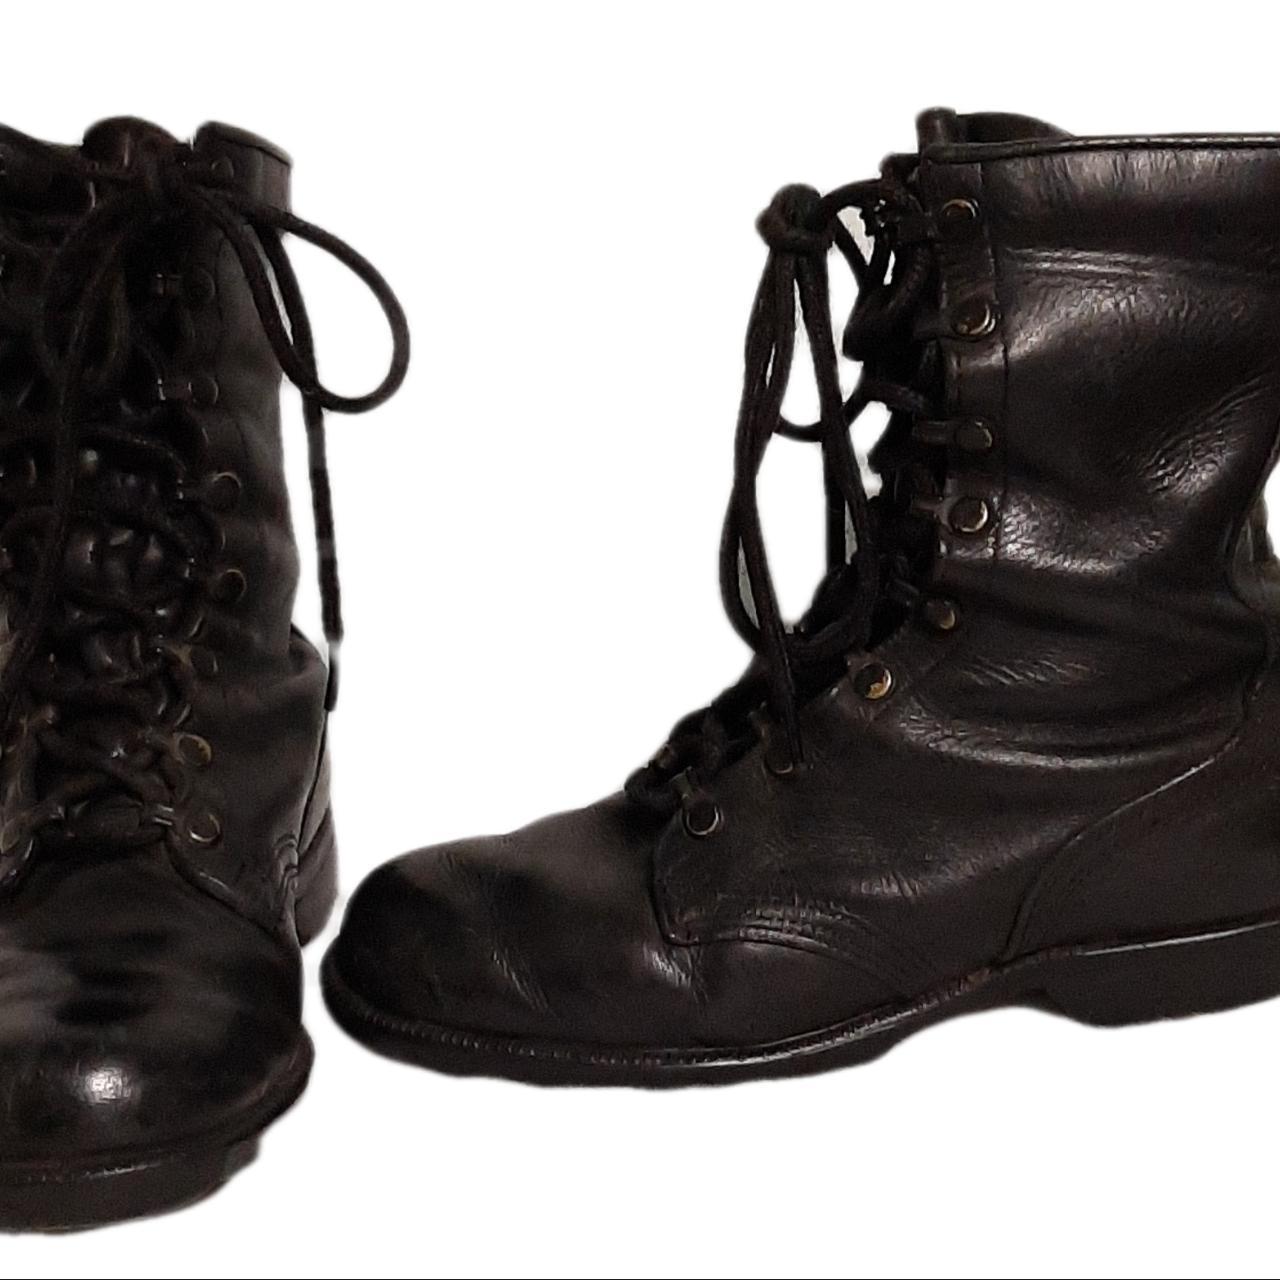 Vintage black lace-up combat boots. 9